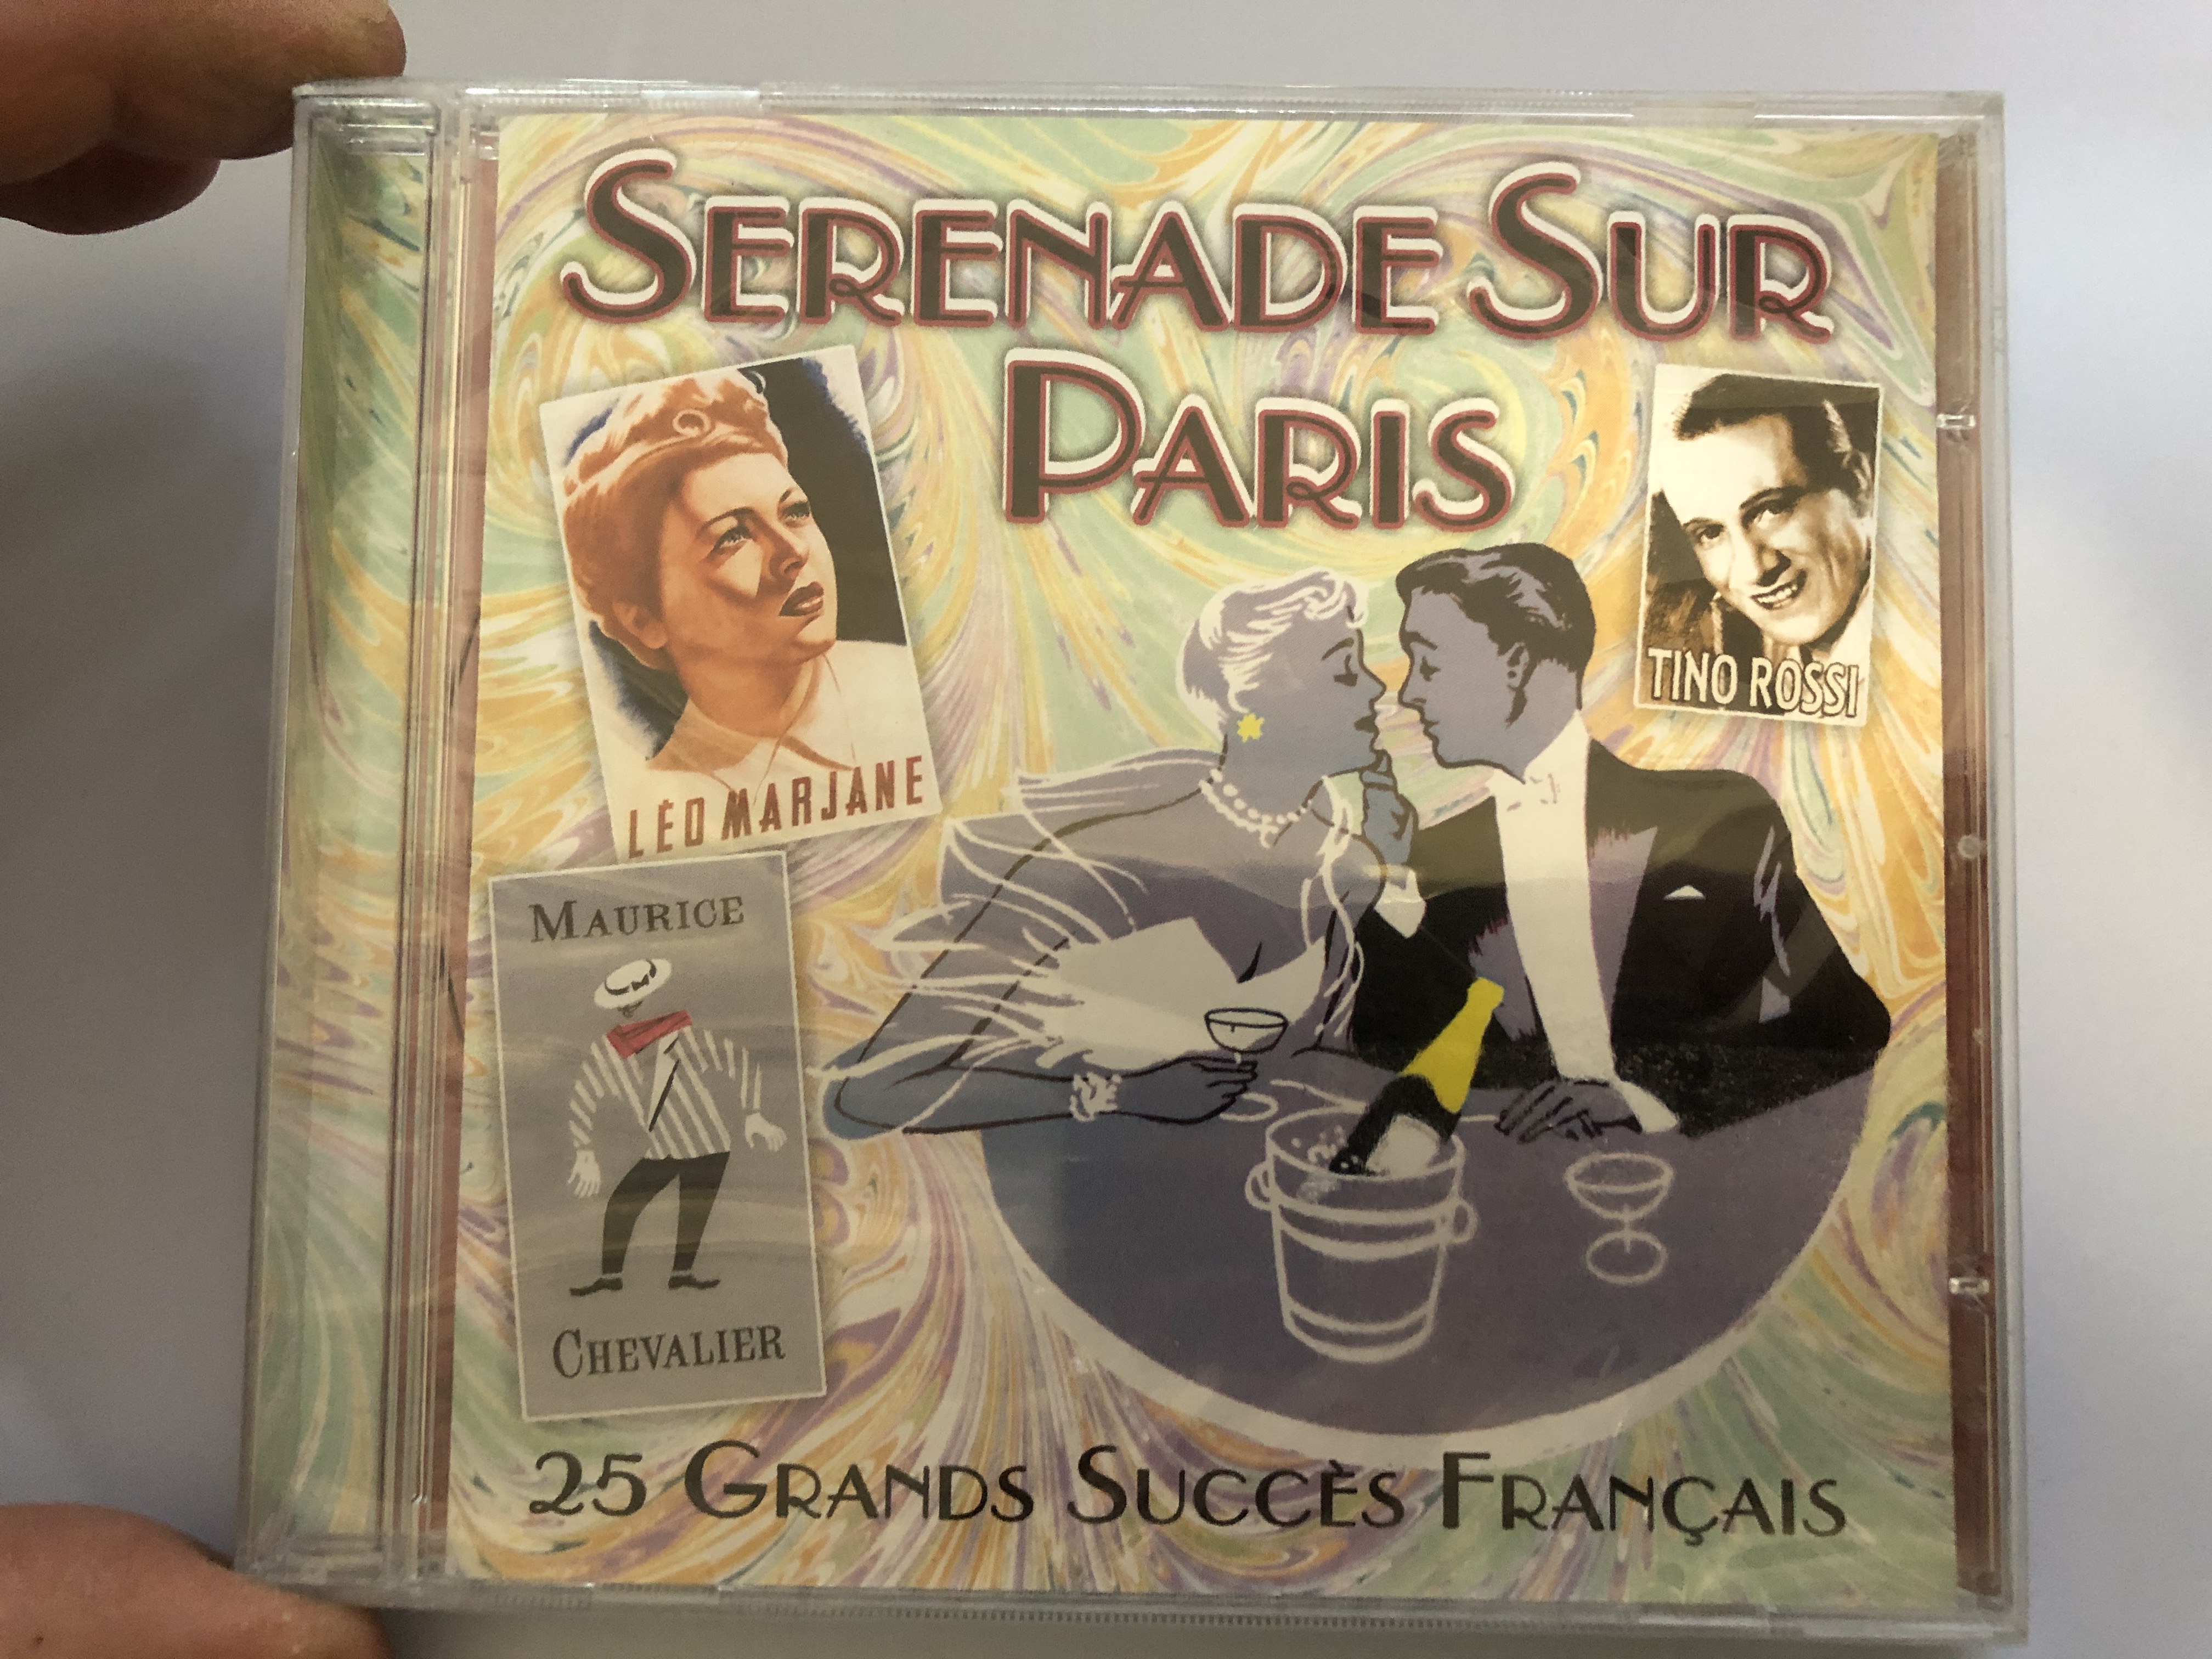 serenade-sur-paris-25-grands-succes-francais-prism-leisure-audio-cd-2003-platcd-941-1-.jpg